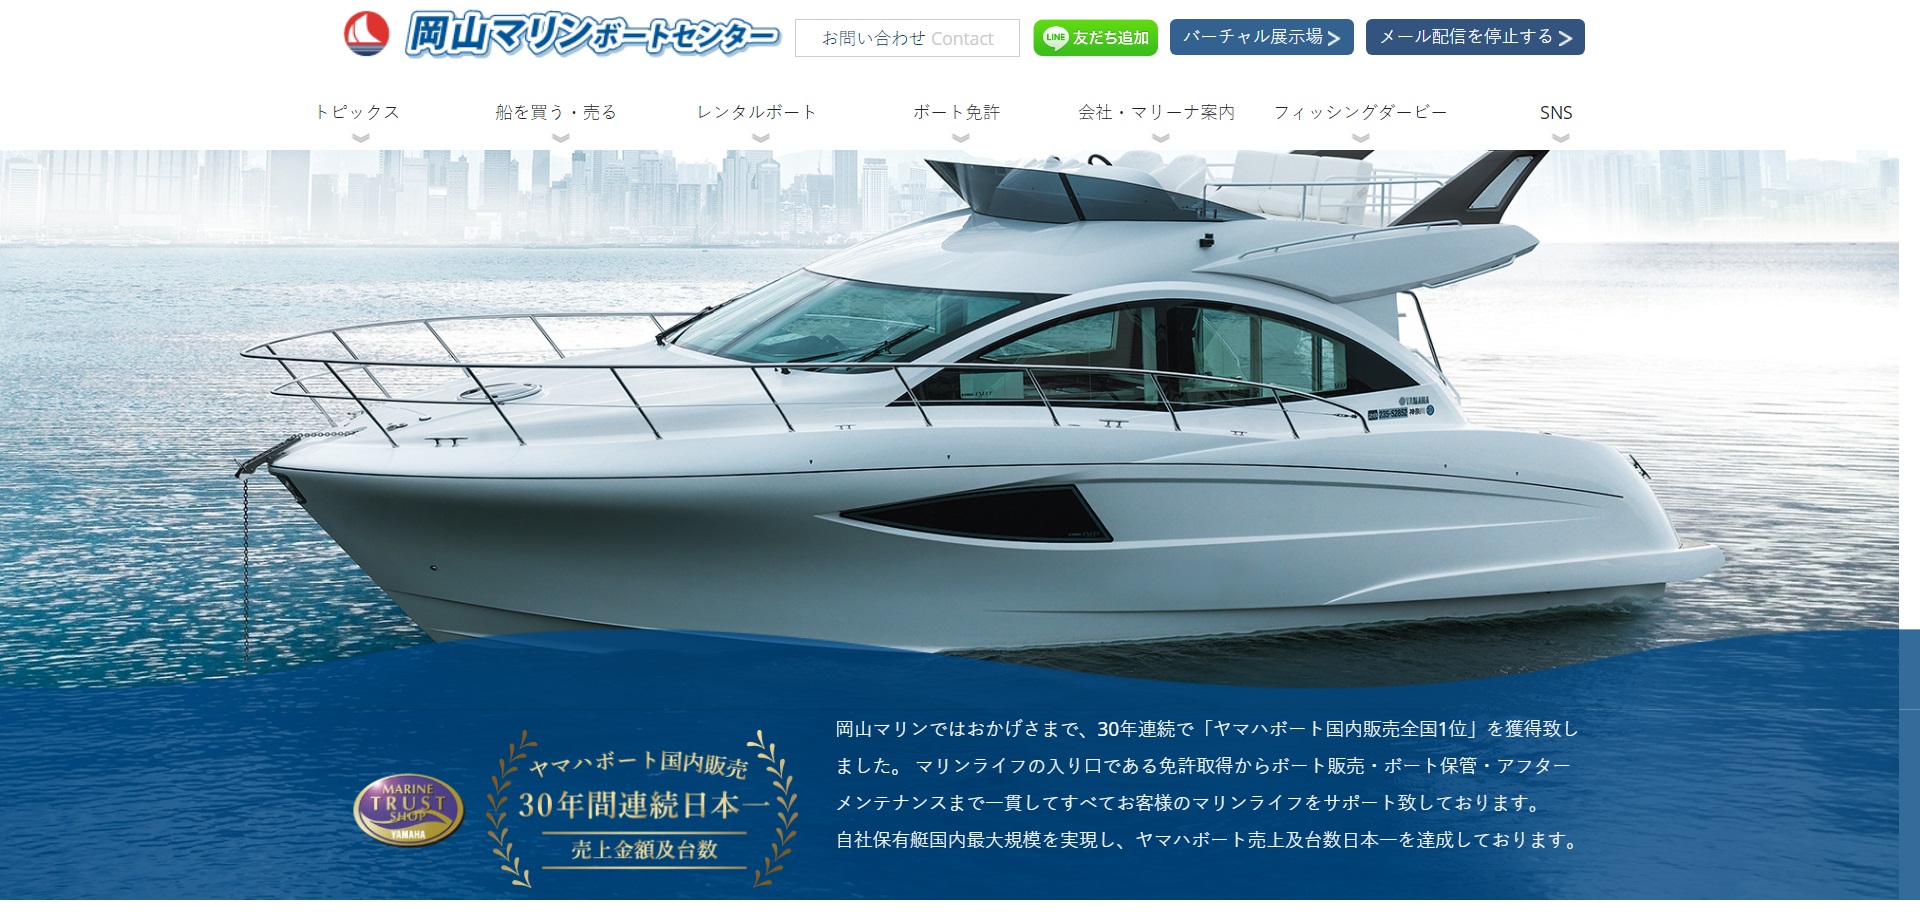 岡山県 O.Kボート免許教室で小型船舶免許を取得